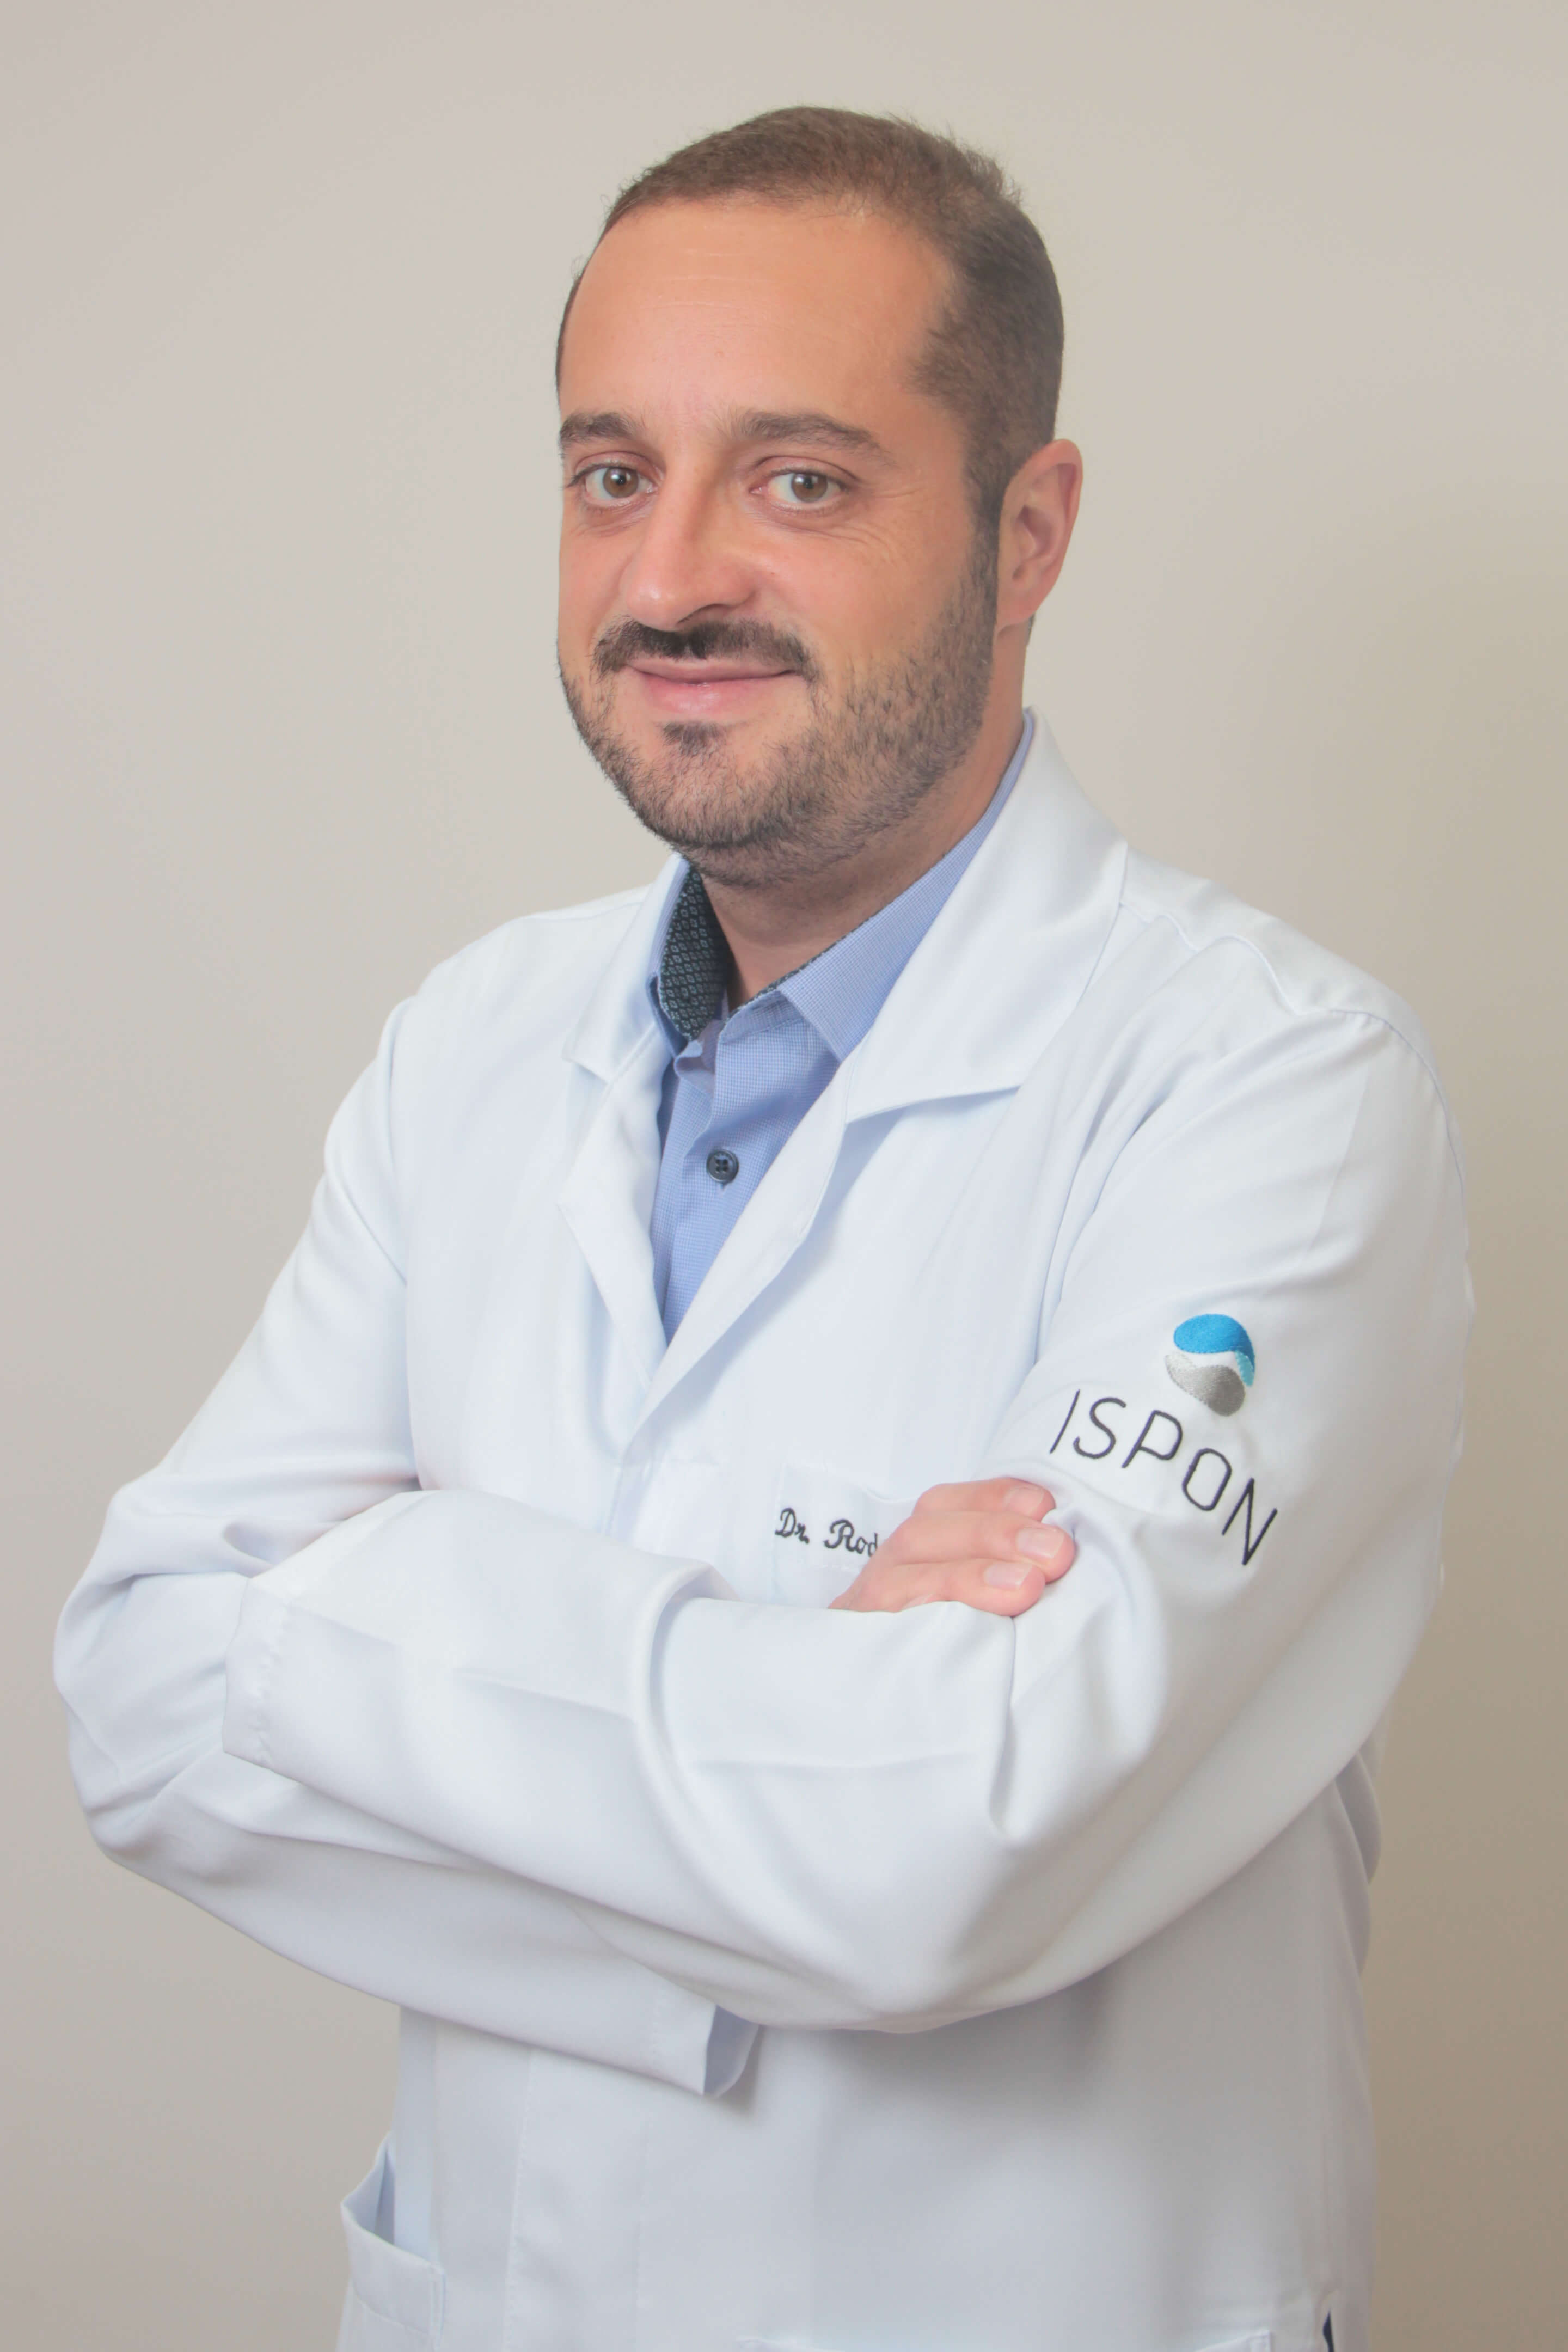 Dr. Rodrigo Cardoso